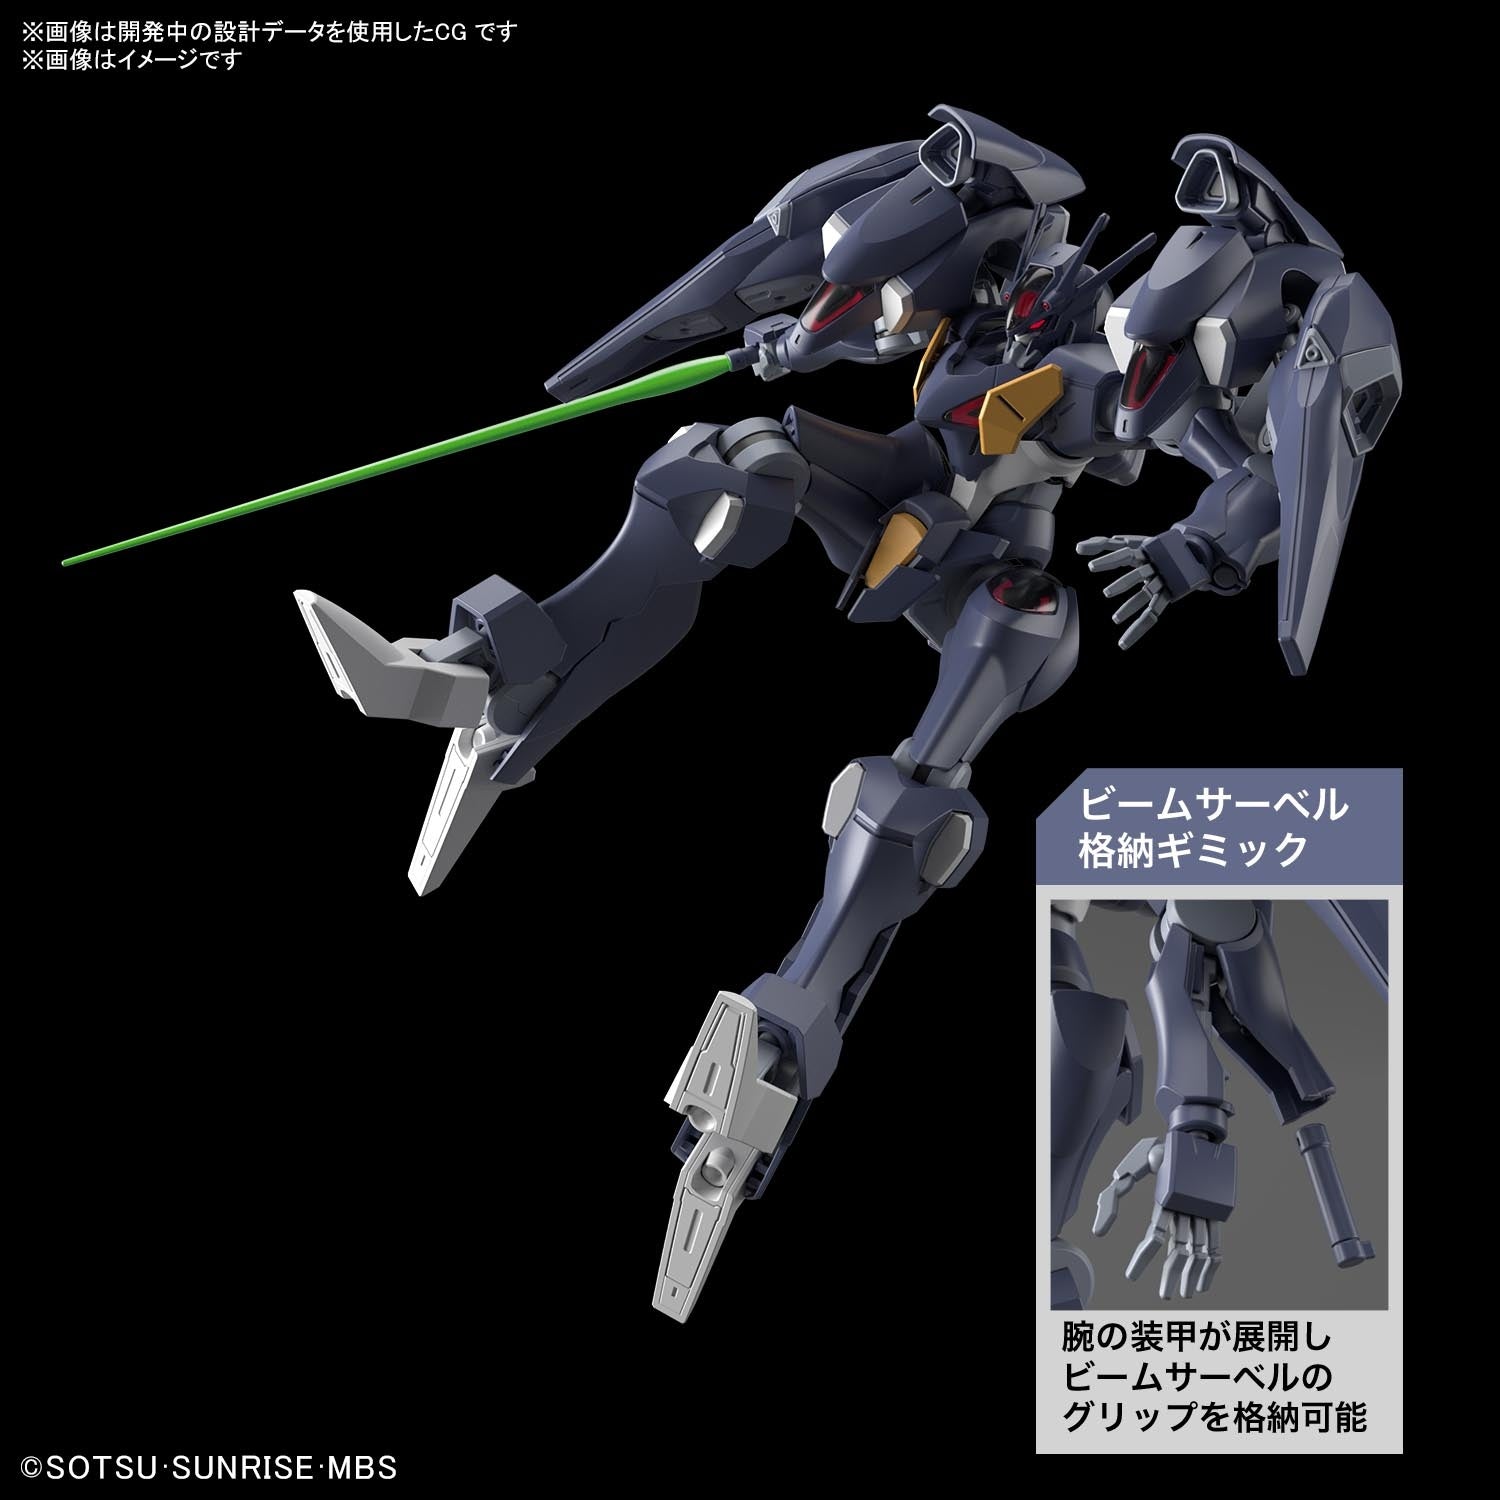 Pre-Order HG Gundam Pharact